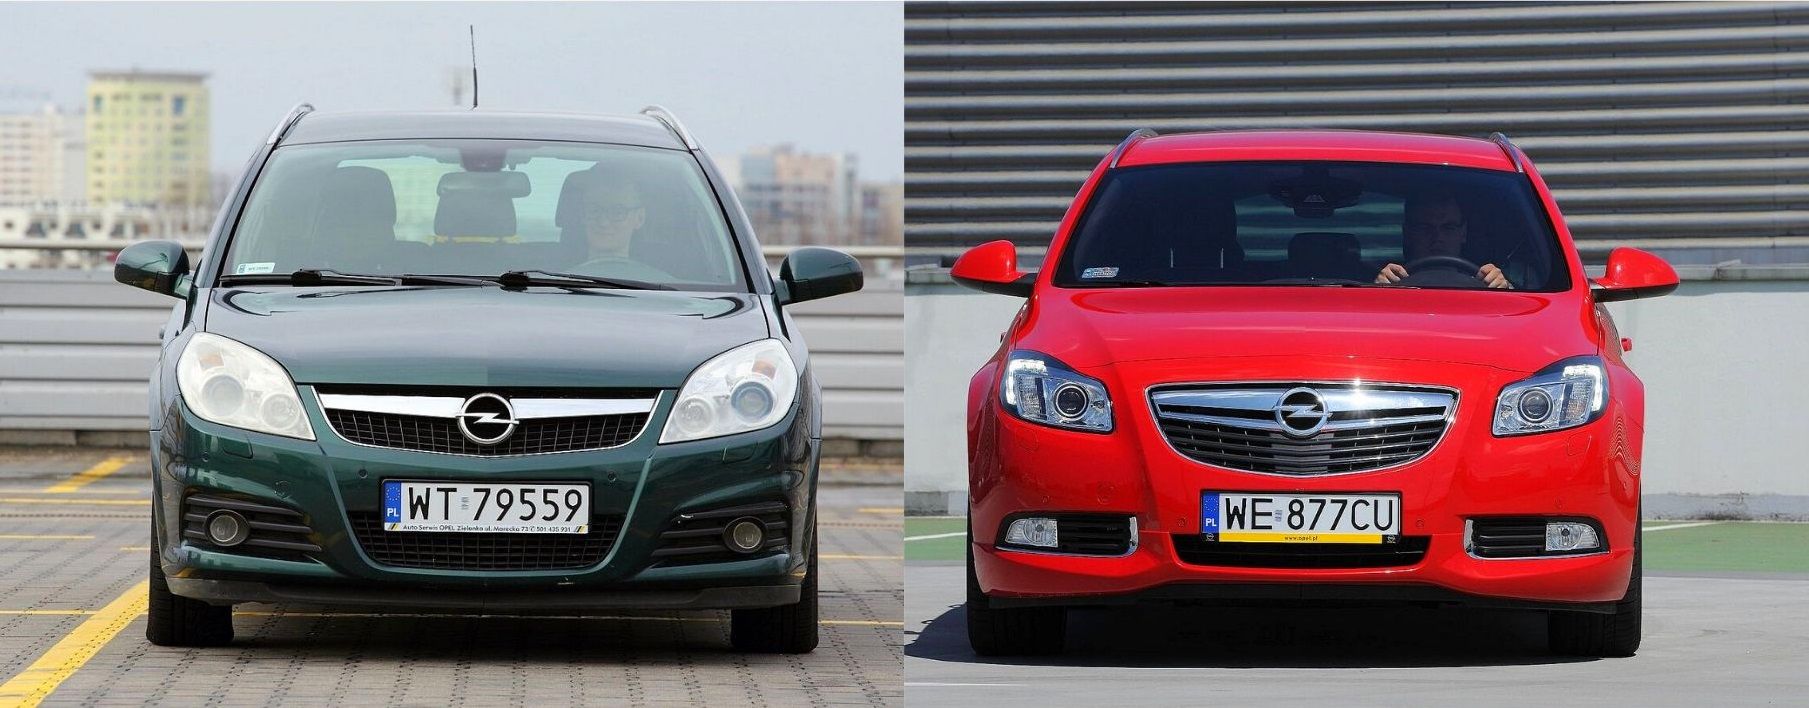 Używany Opel Vectra C i Opel Insignia A którego wybrać?